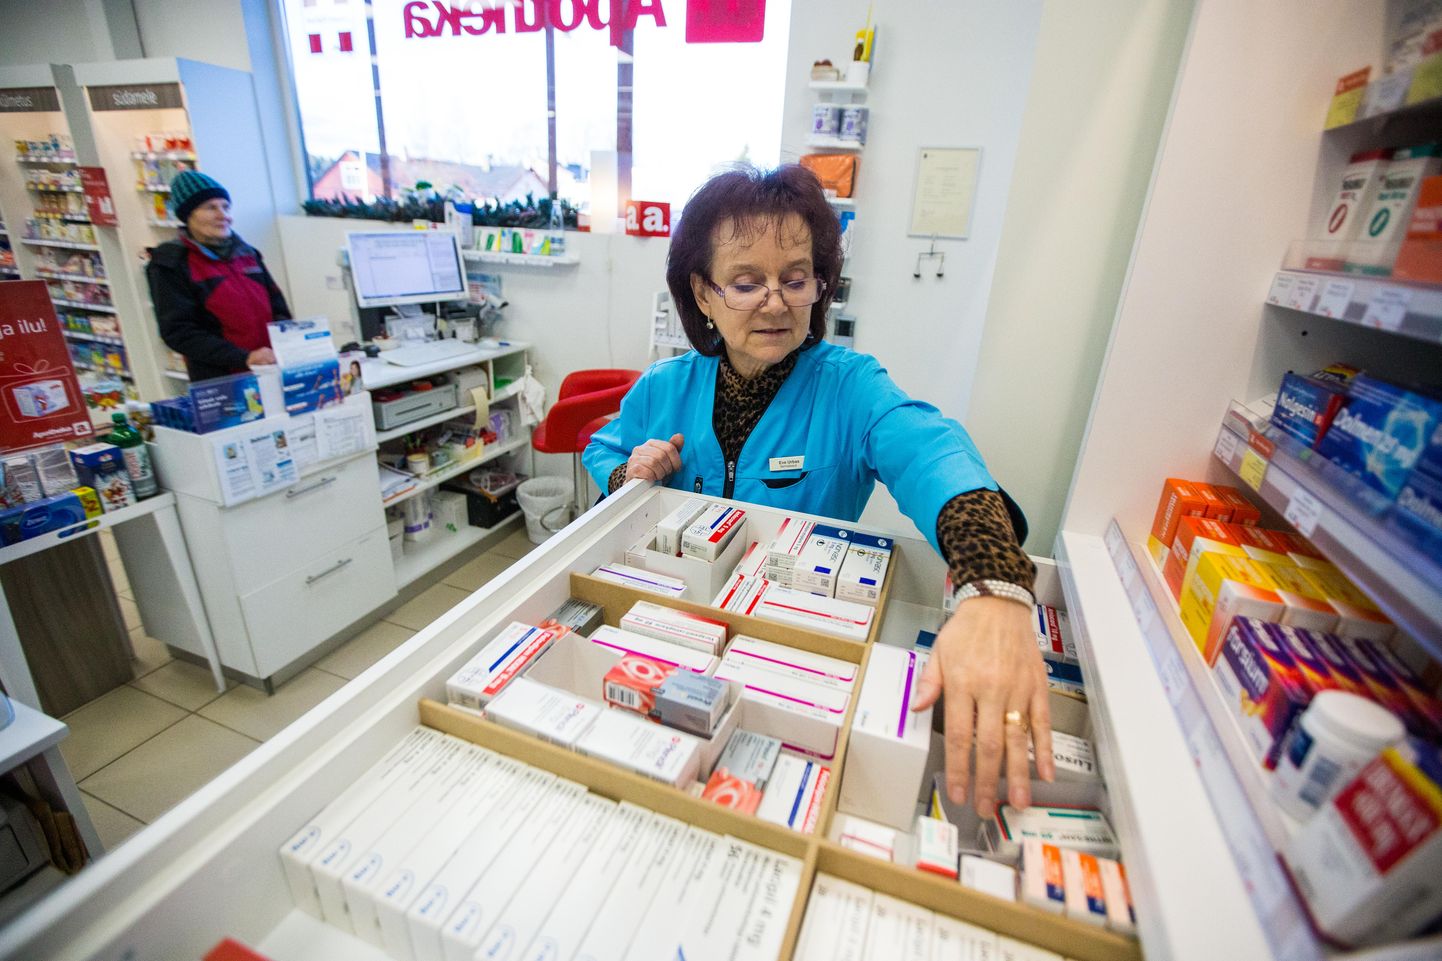 Ravimit müües kontrollib apteeker, kas süsteemis olev teave vastab pakendil olevale turvakoodile.